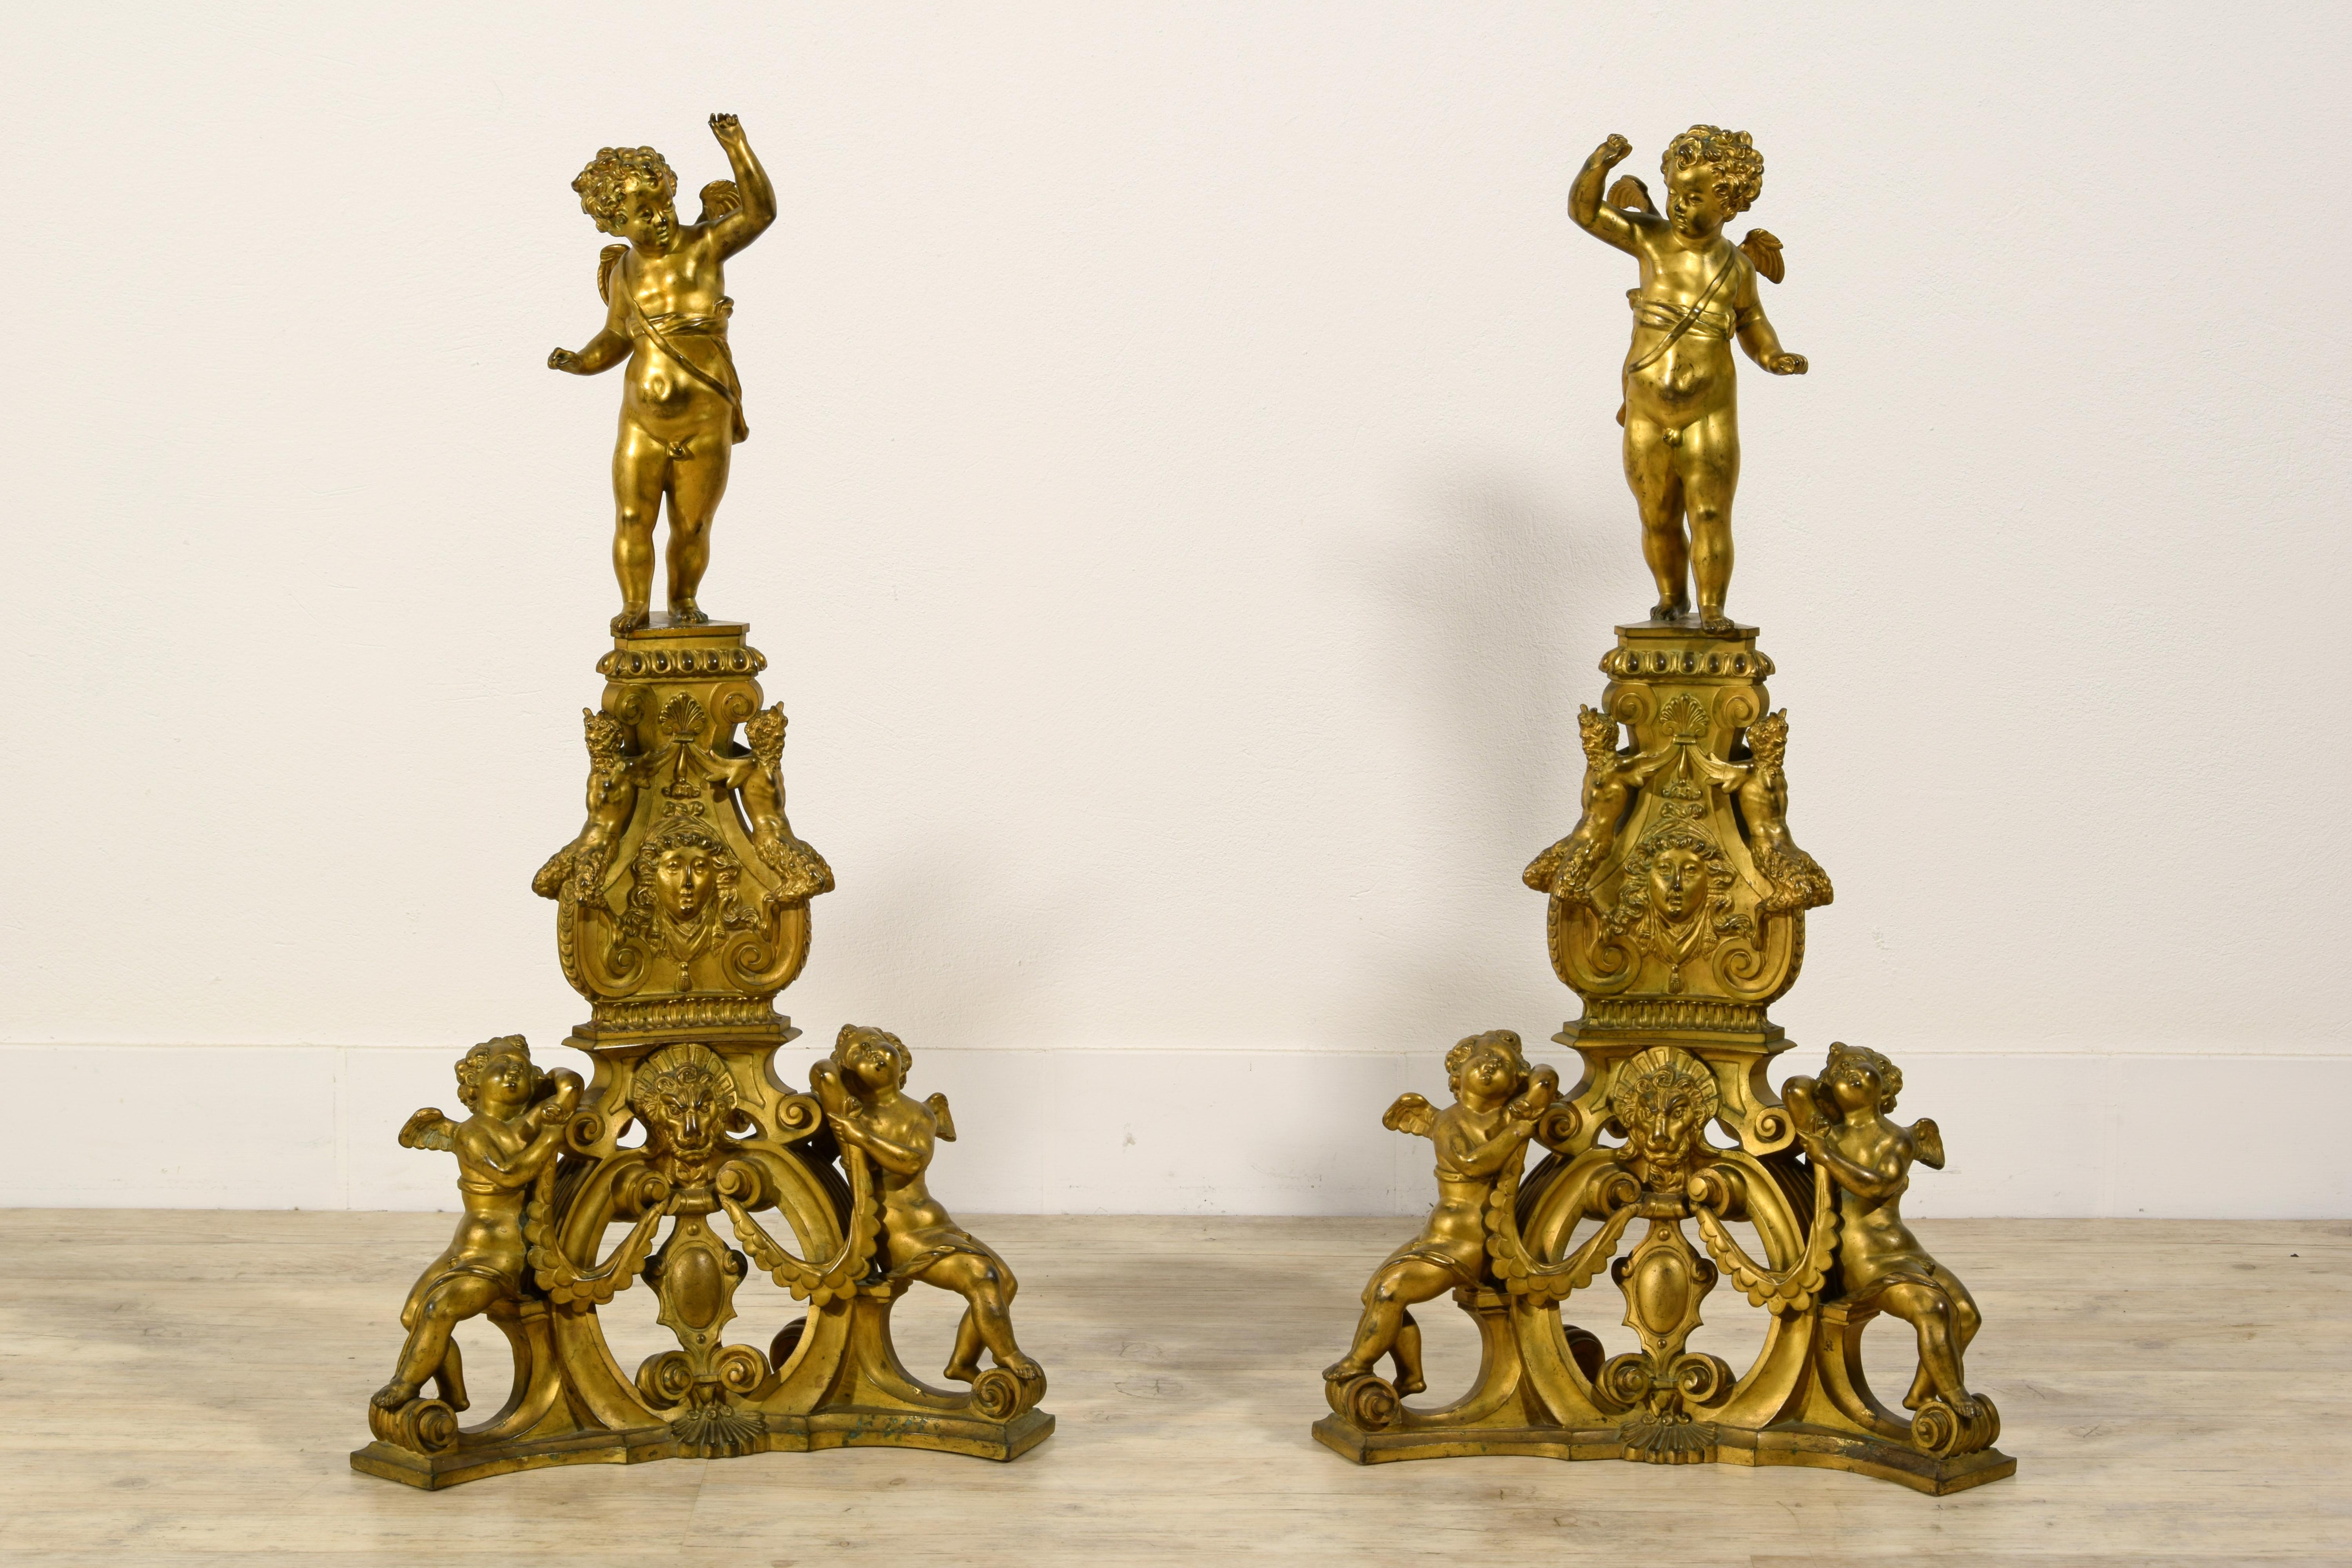 XIX Siècle, Paire de Chenets de cheminée en bronze doré vénitien de style baroque

Cette imposante paire de Chenets de cheminée en bronze finement ciselé et doré a été fabriquée en Italie, à Venise, dans la première moitié du XIXe siècle, dans le